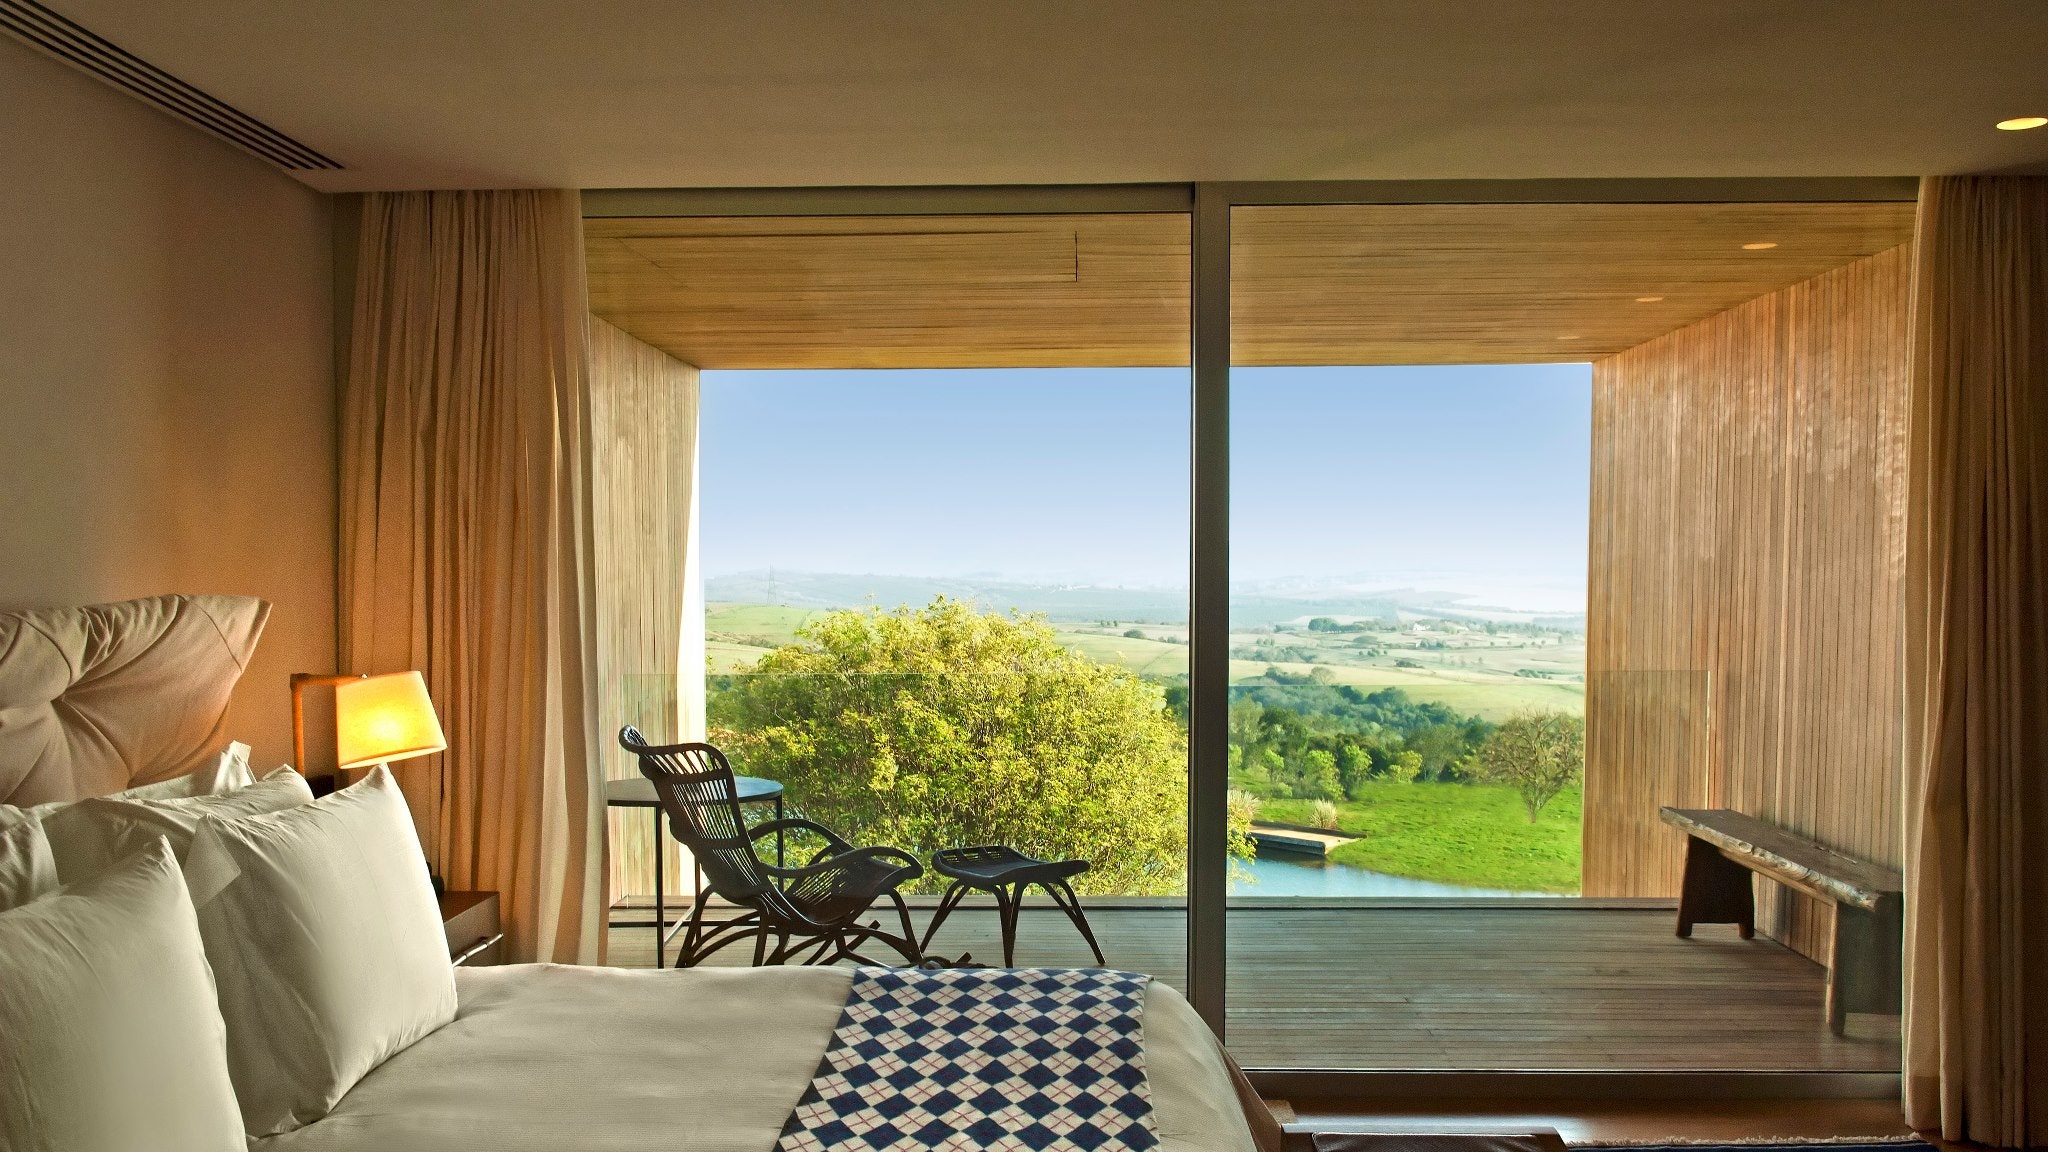 Отель Fasano Boa Vista в СанПаулу по проекту архитектора Исая Вейнфелда | Admagazine